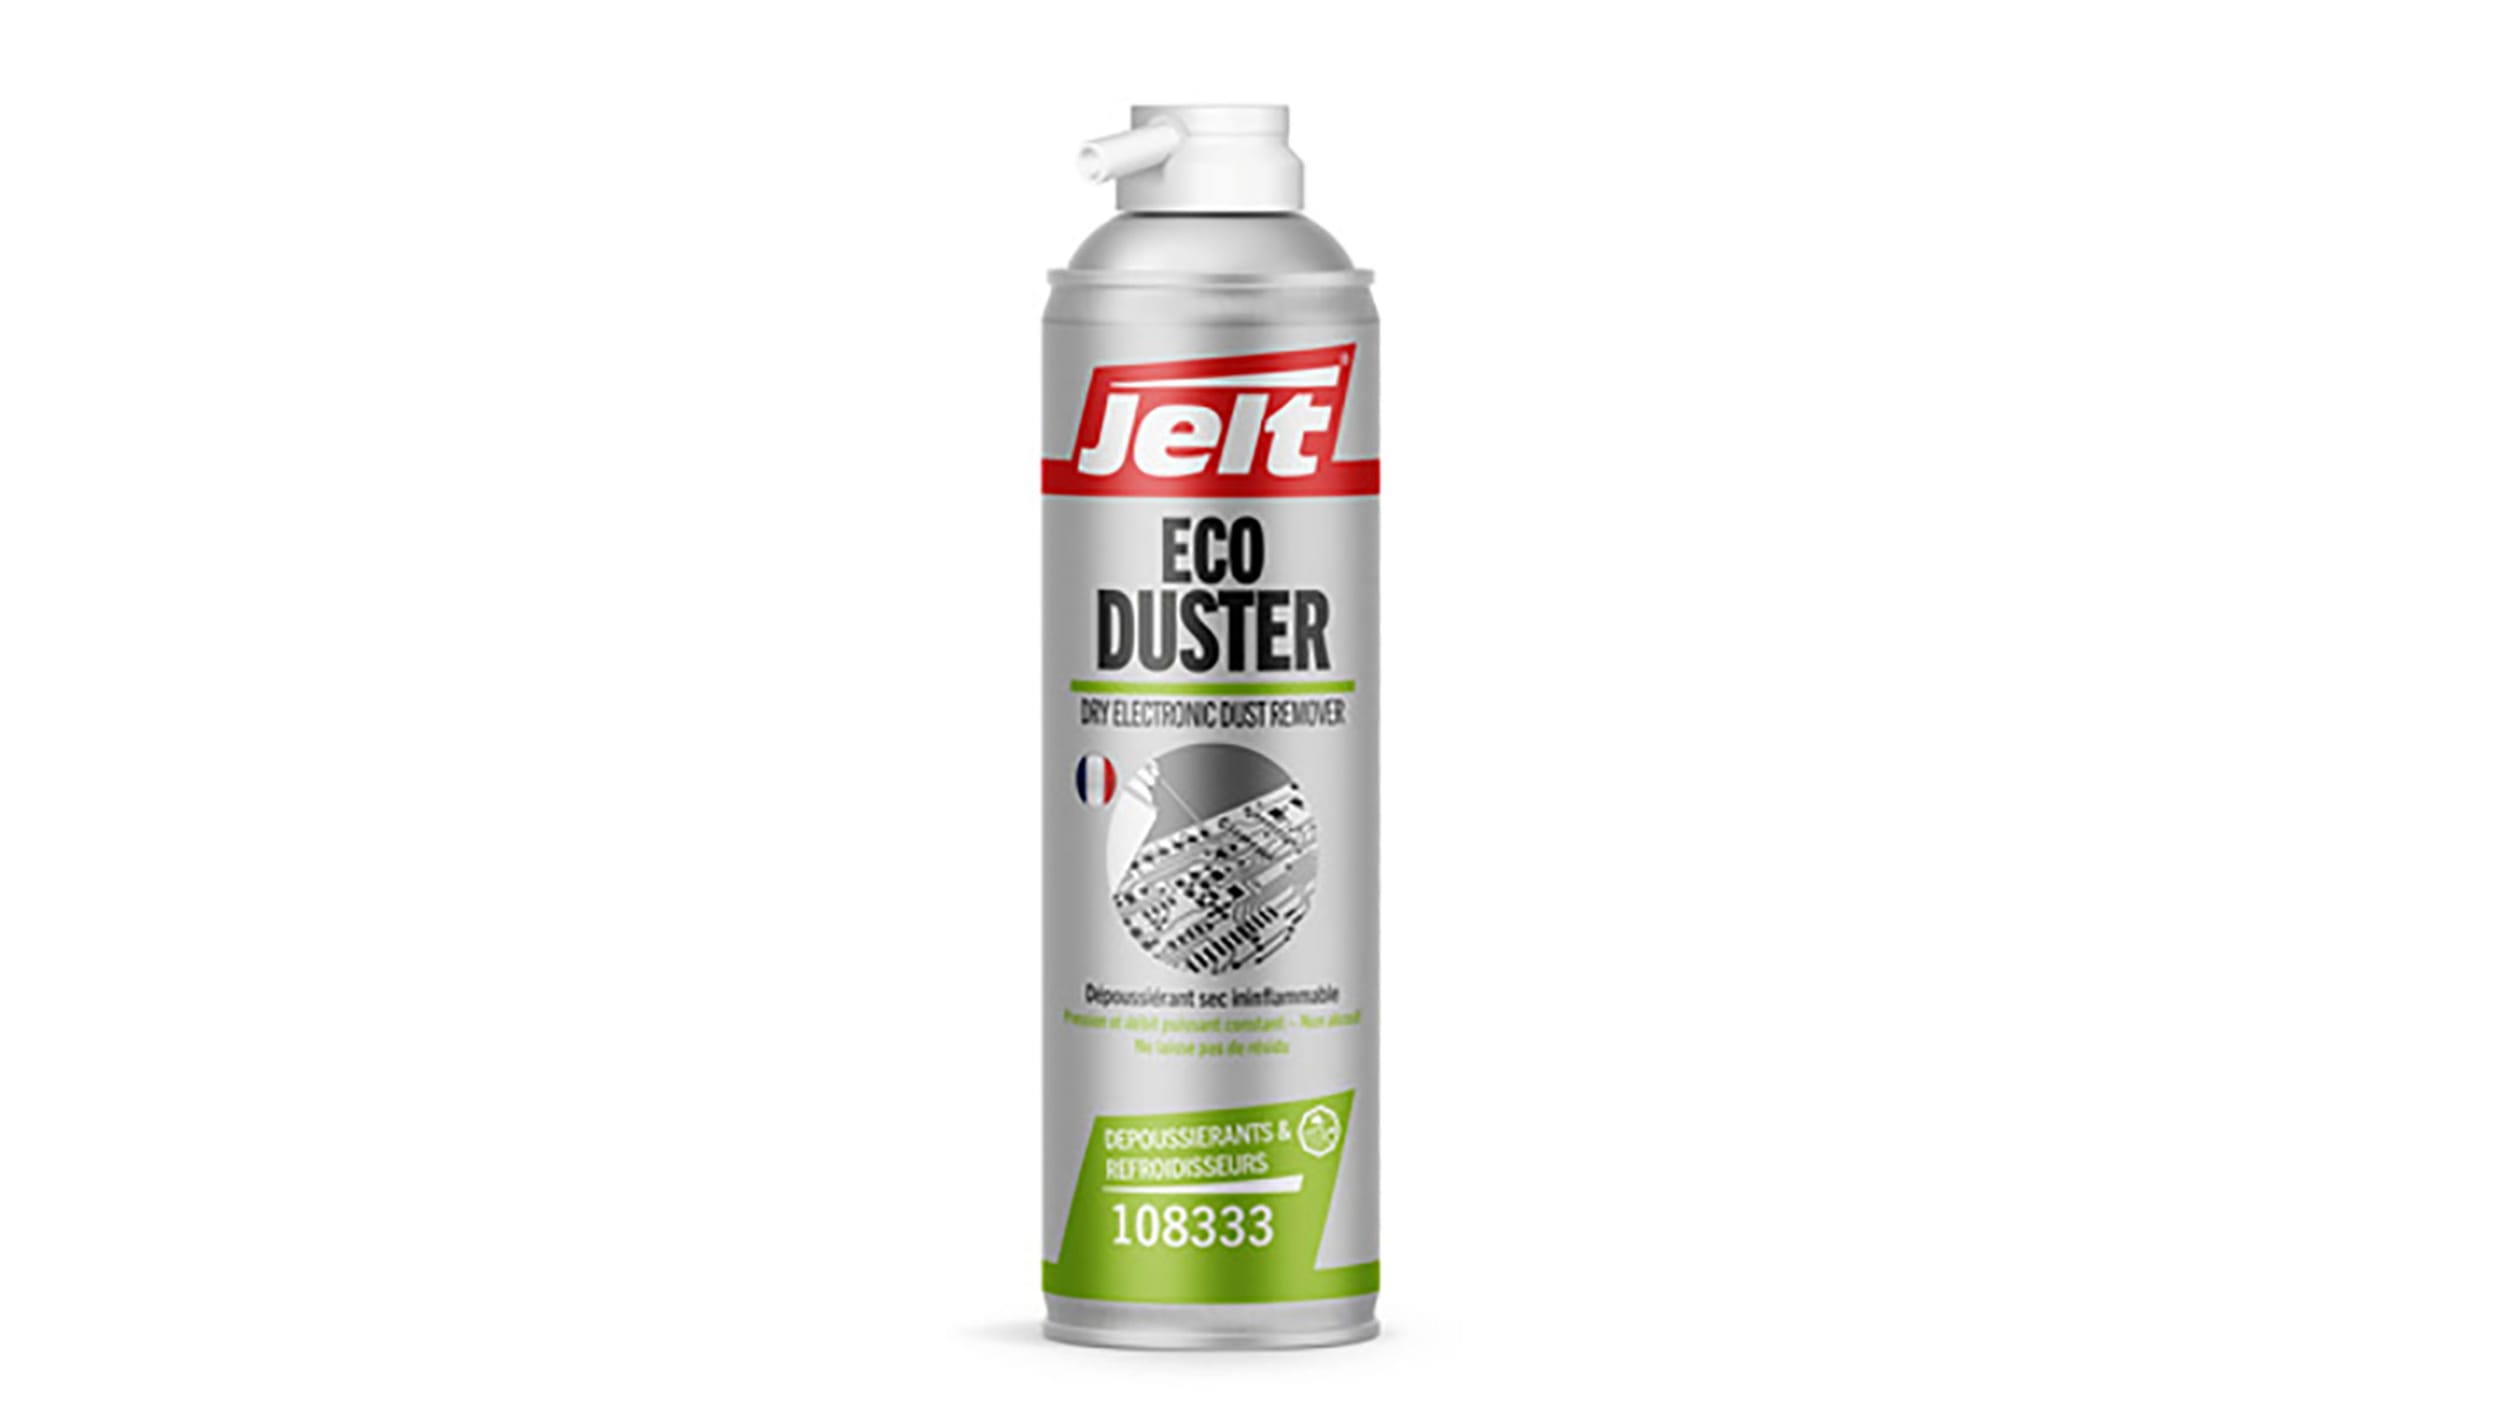 Bomboletta ad aria compressa Jelt Eco Duster da 650 ml